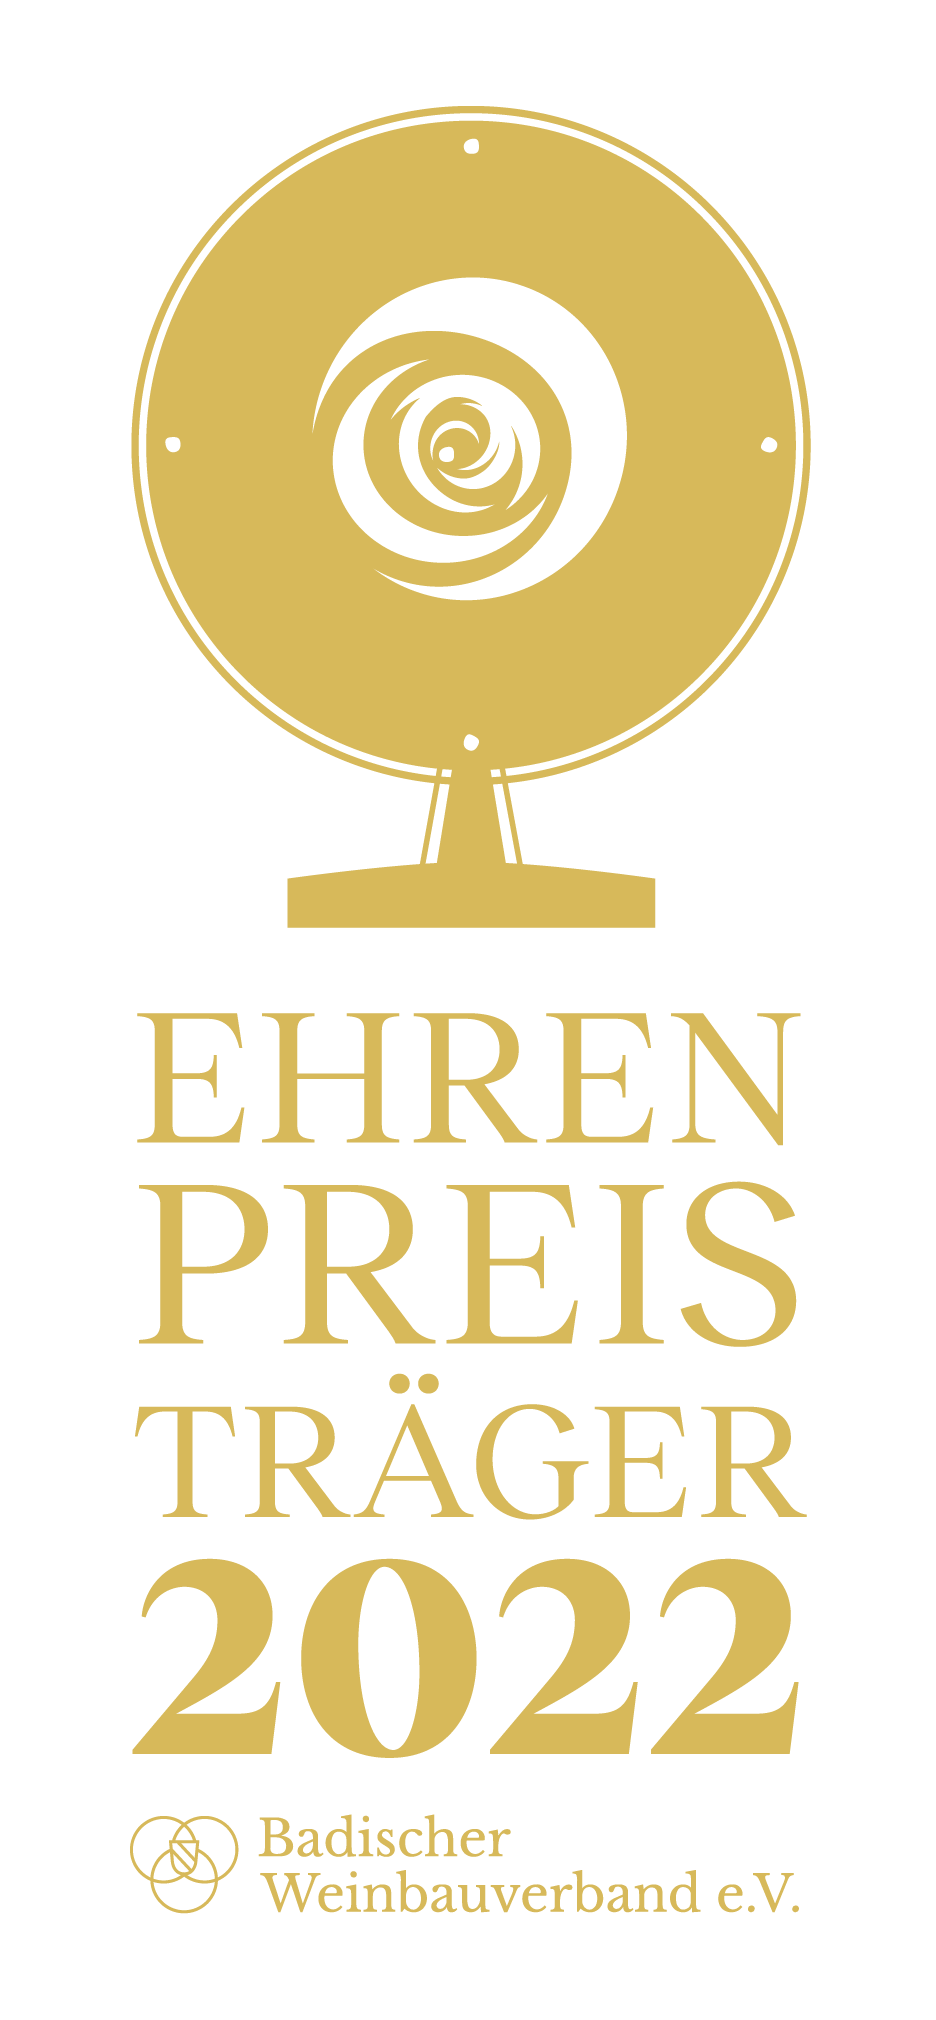 Ehrenpreisträger 2022 - Gold - Weinbauverband